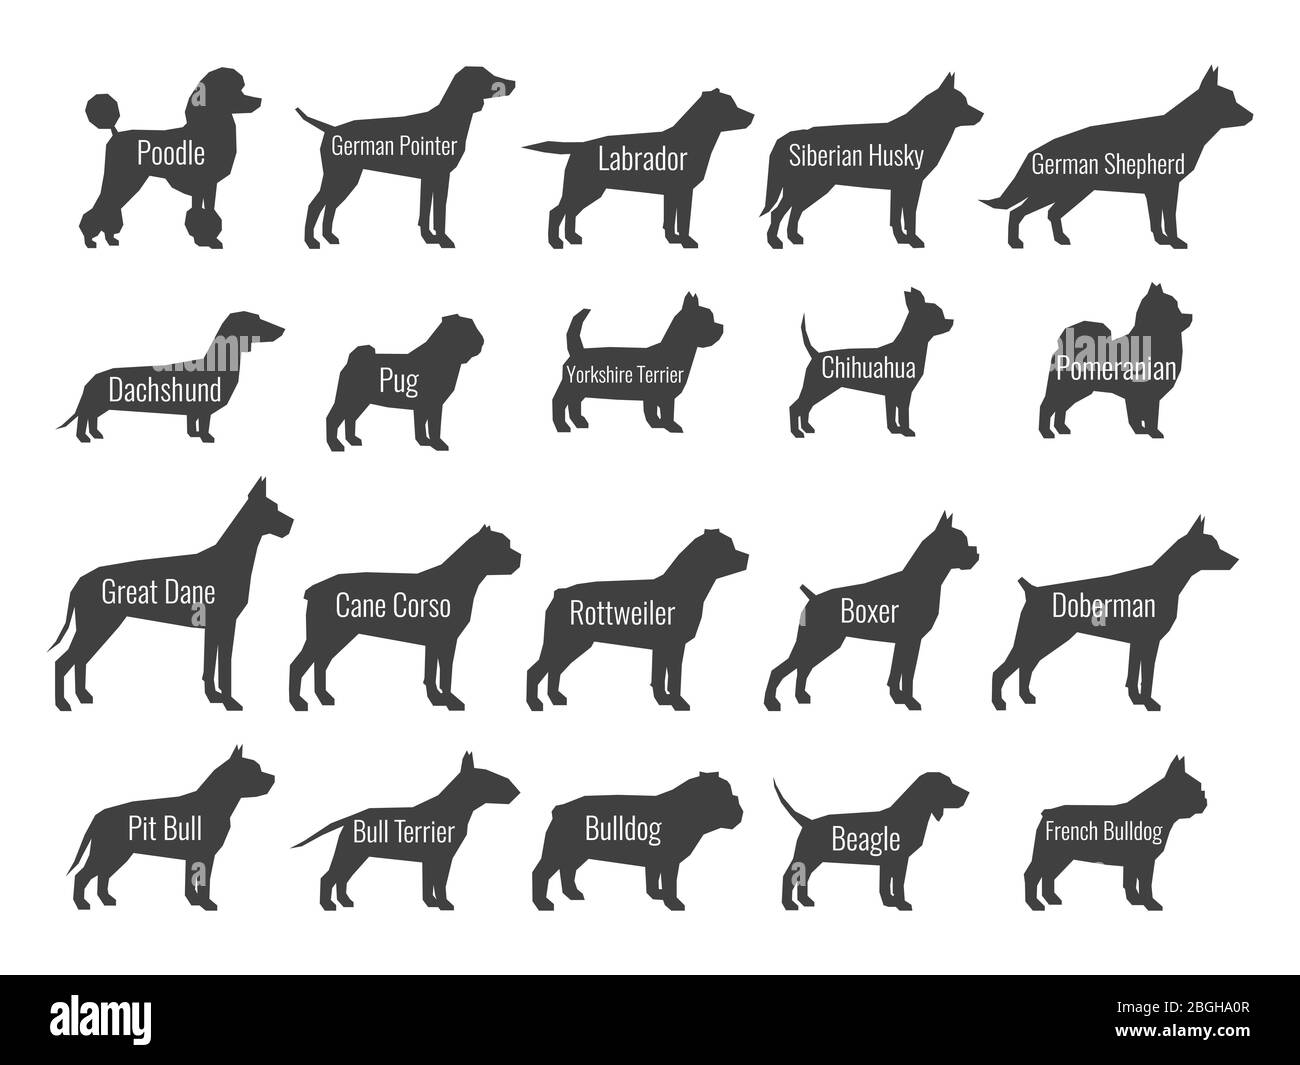 Il cane nero alleva silhouette vettoriali isolate su sfondo bianco. Profilo di alci e labrador, Husky siberiano e pastore, dachshund e illustrazione di pug Illustrazione Vettoriale